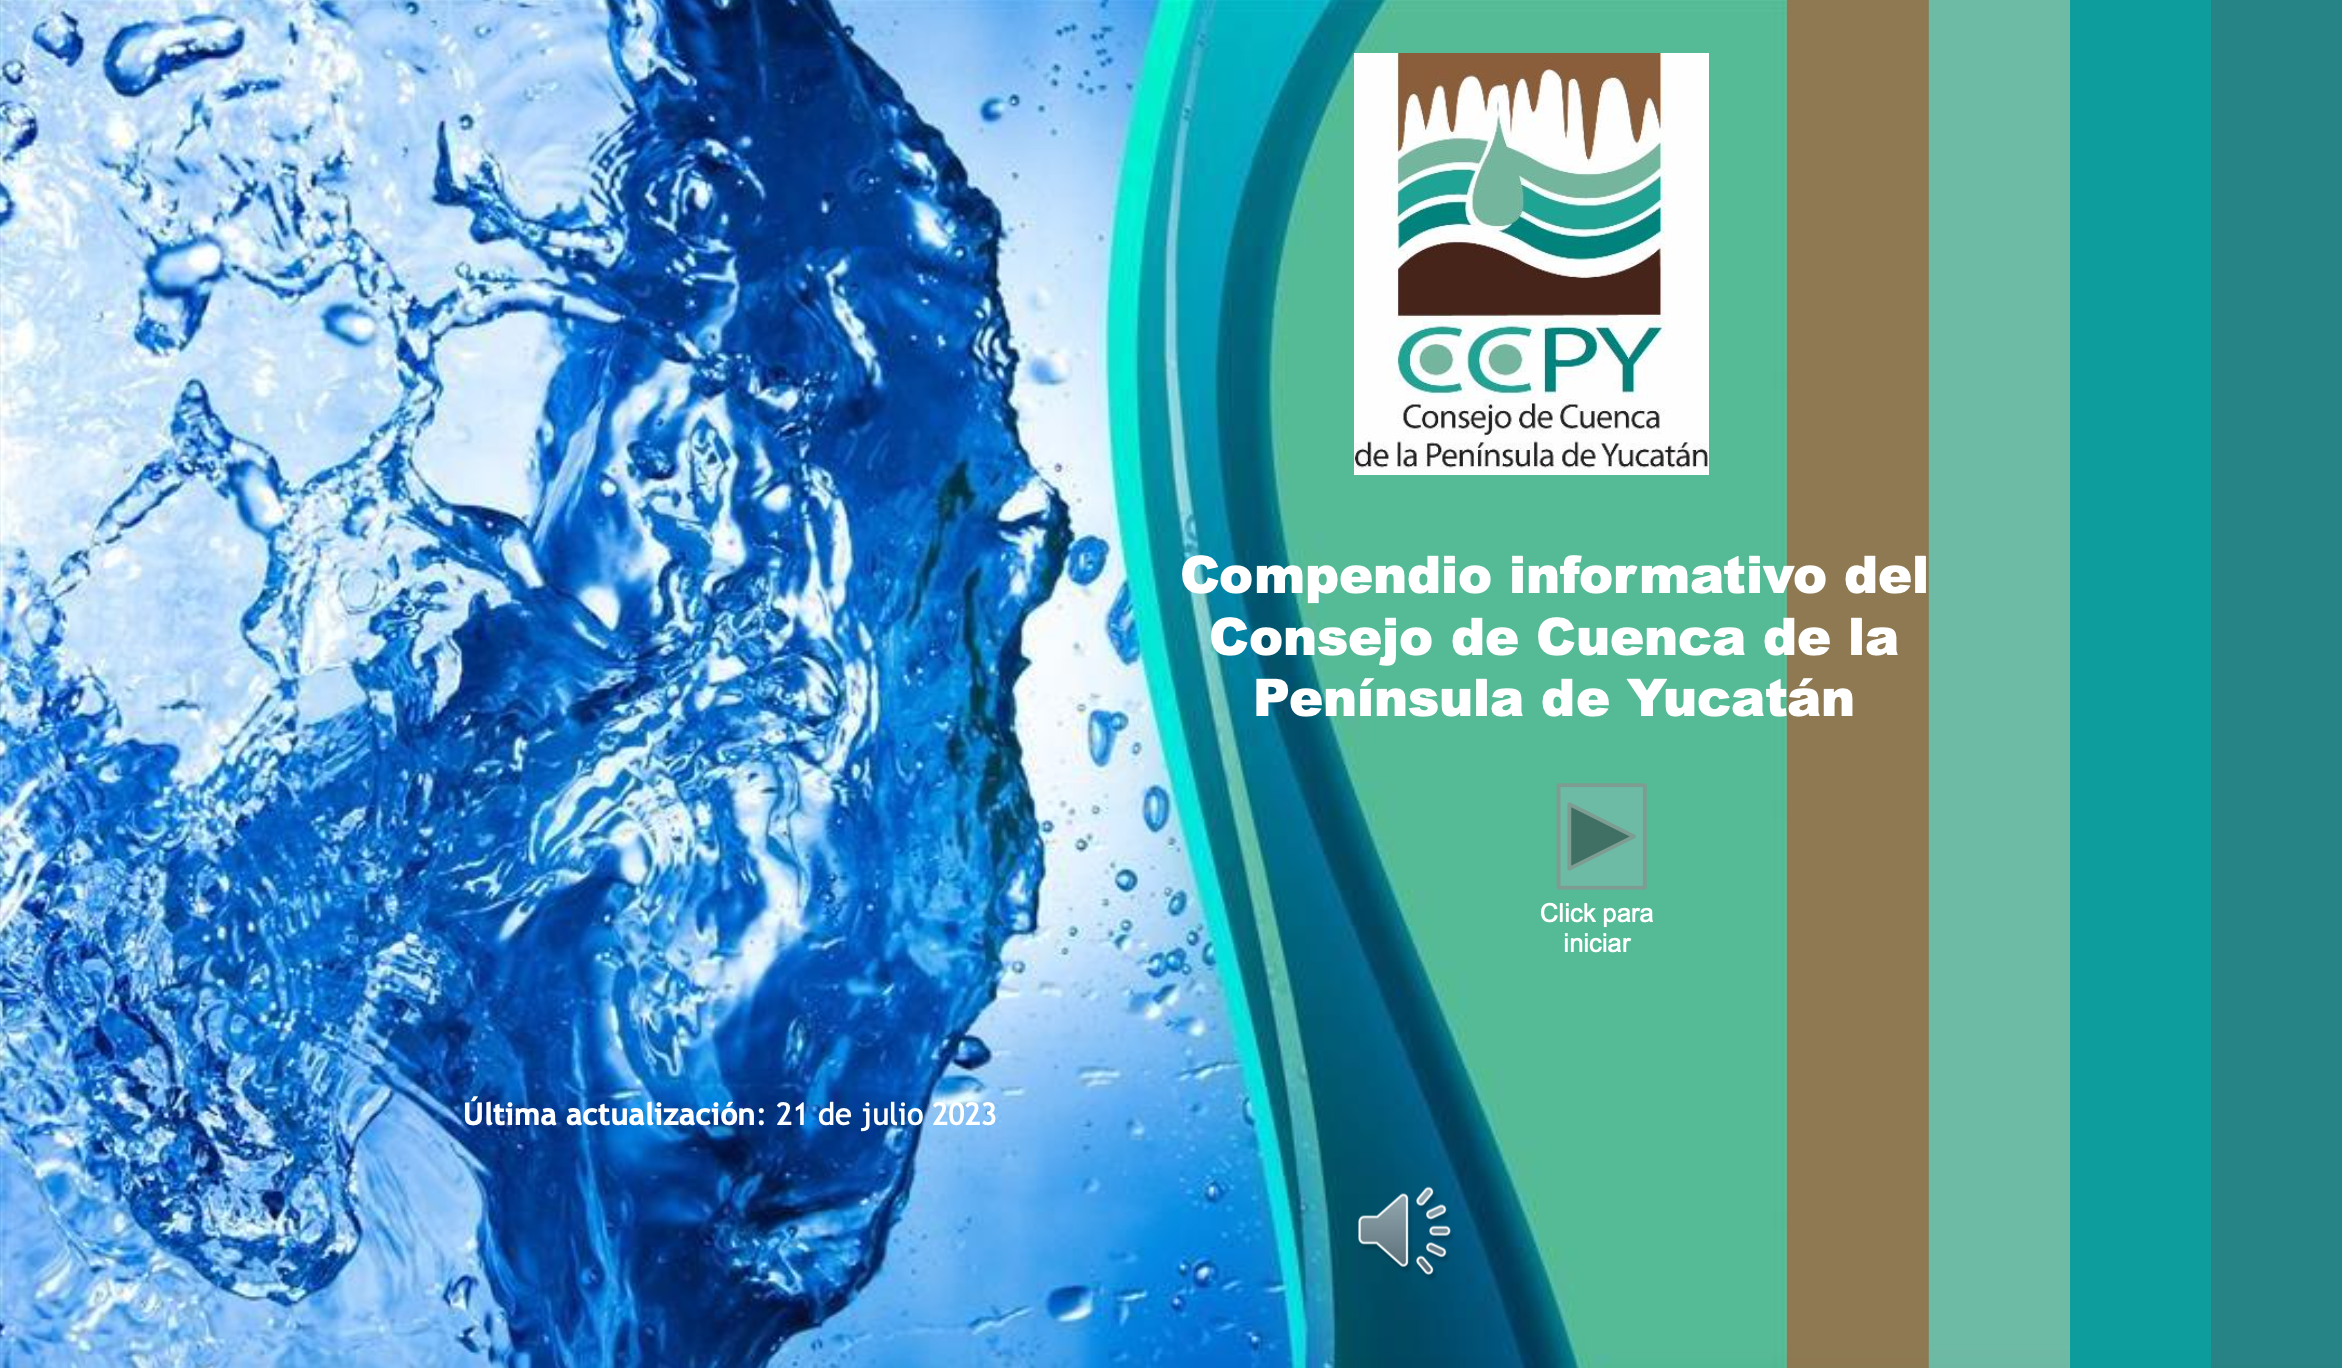 Compendio informativo del Consejo de Cuenca de la Península de Yucatán (CCPY)